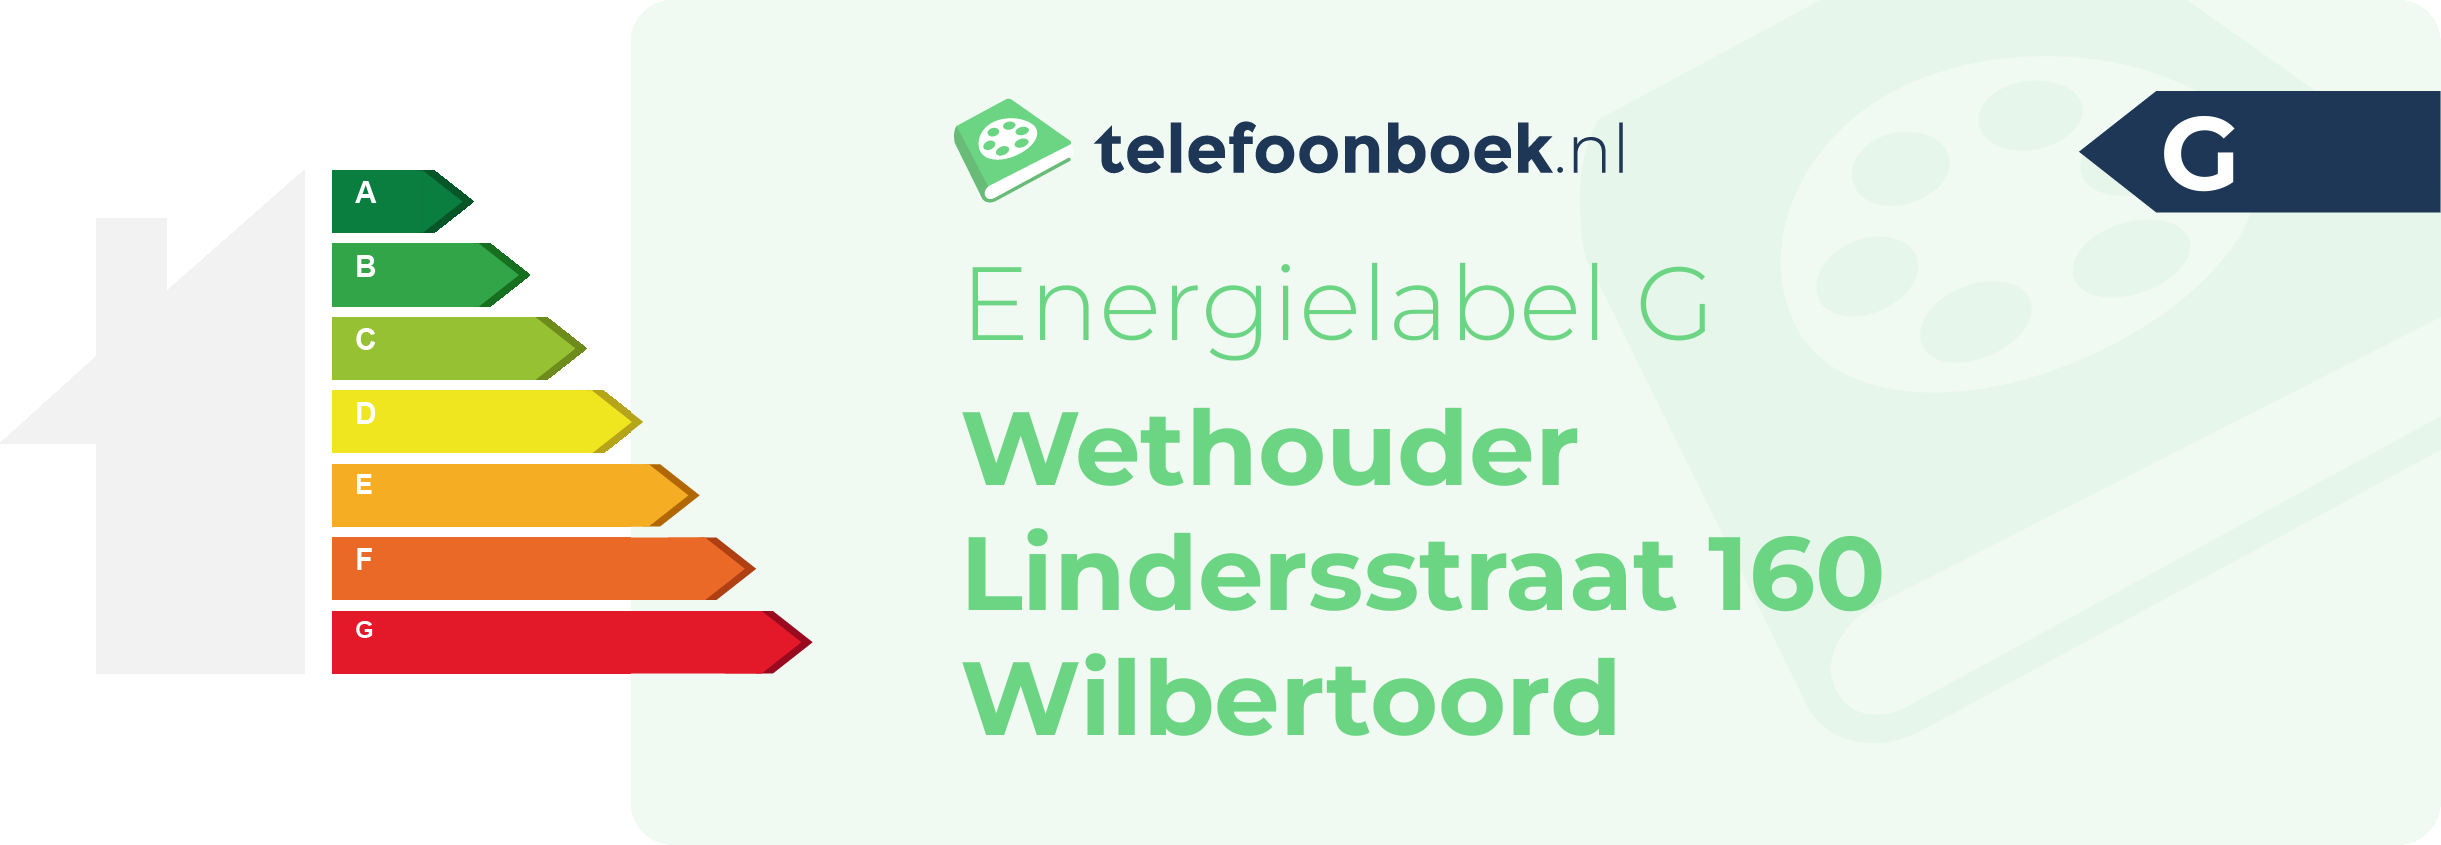 Energielabel Wethouder Lindersstraat 160 Wilbertoord